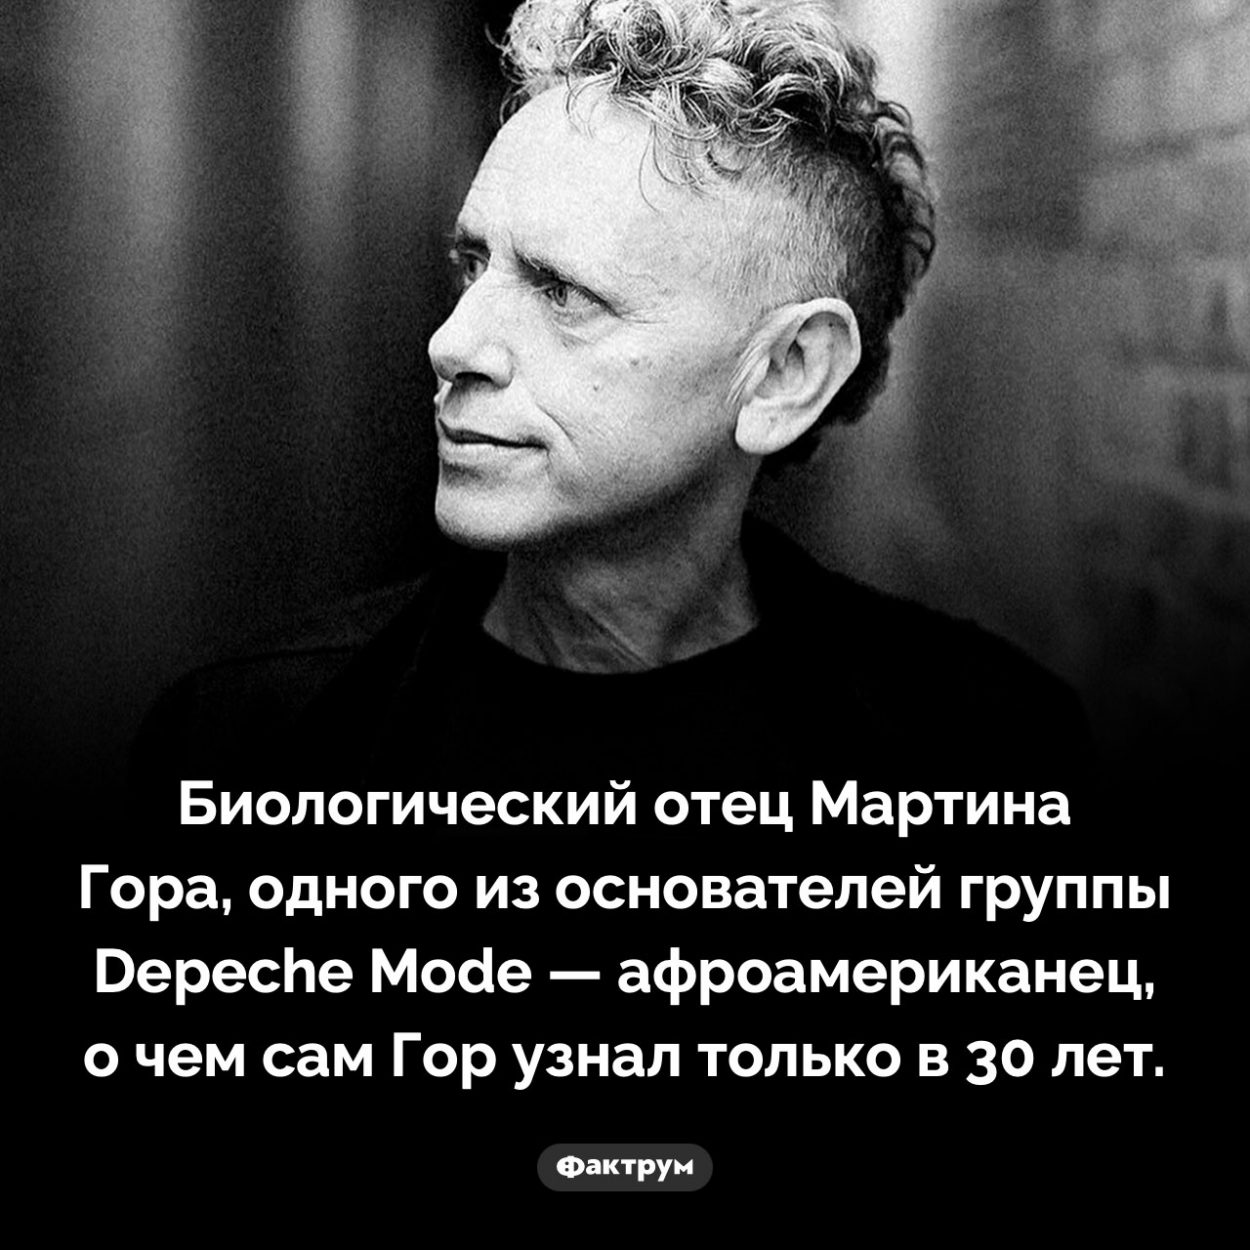 Отец Мартина Гора. Биологический отец Мартина Гора, одного из основателей группы Depeche Mode — афроамериканец, о чем сам Гор узнал только в 30 лет.